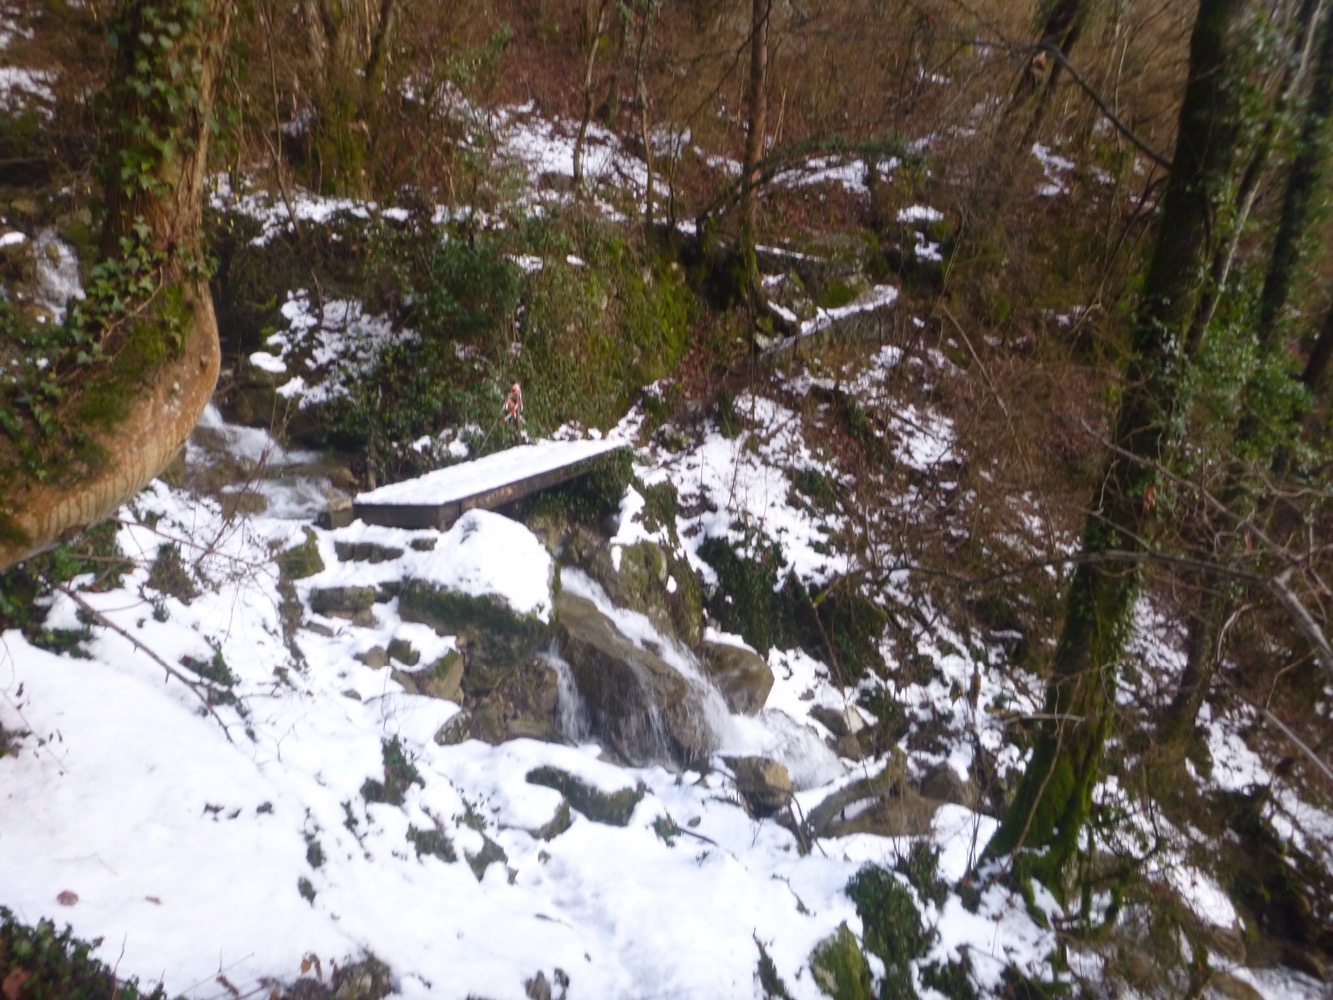 Apparition de la neige au petit pont glissant